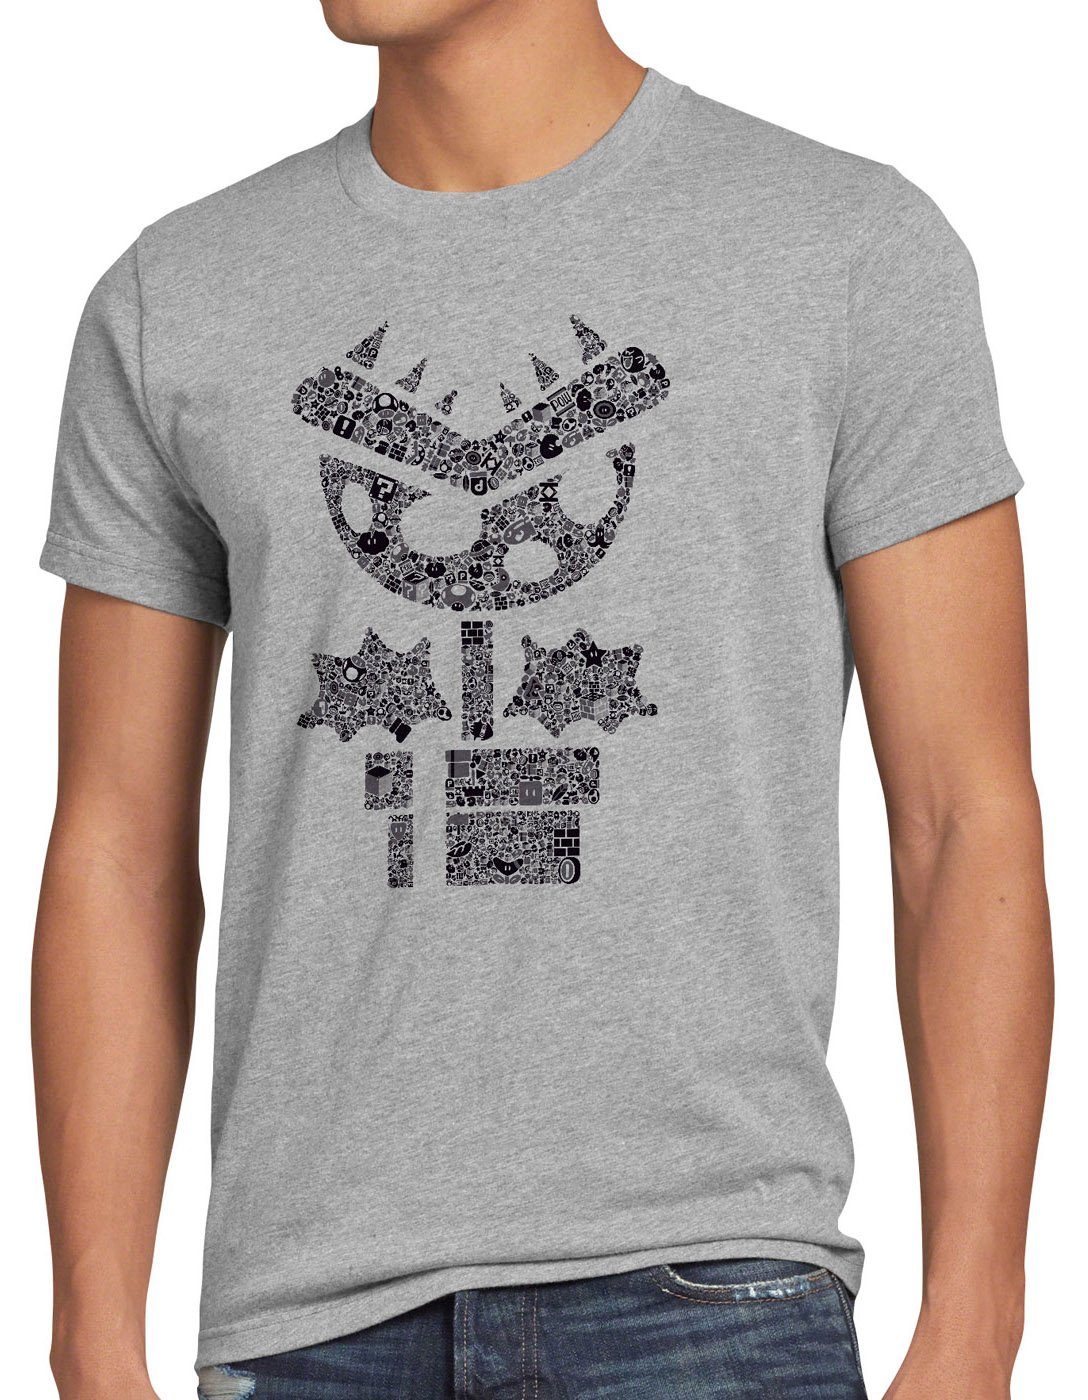 style3 Print-Shirt Herren T-Shirt Super Piranha mario videospiel gamer world game boy nes snes wii grau meliert